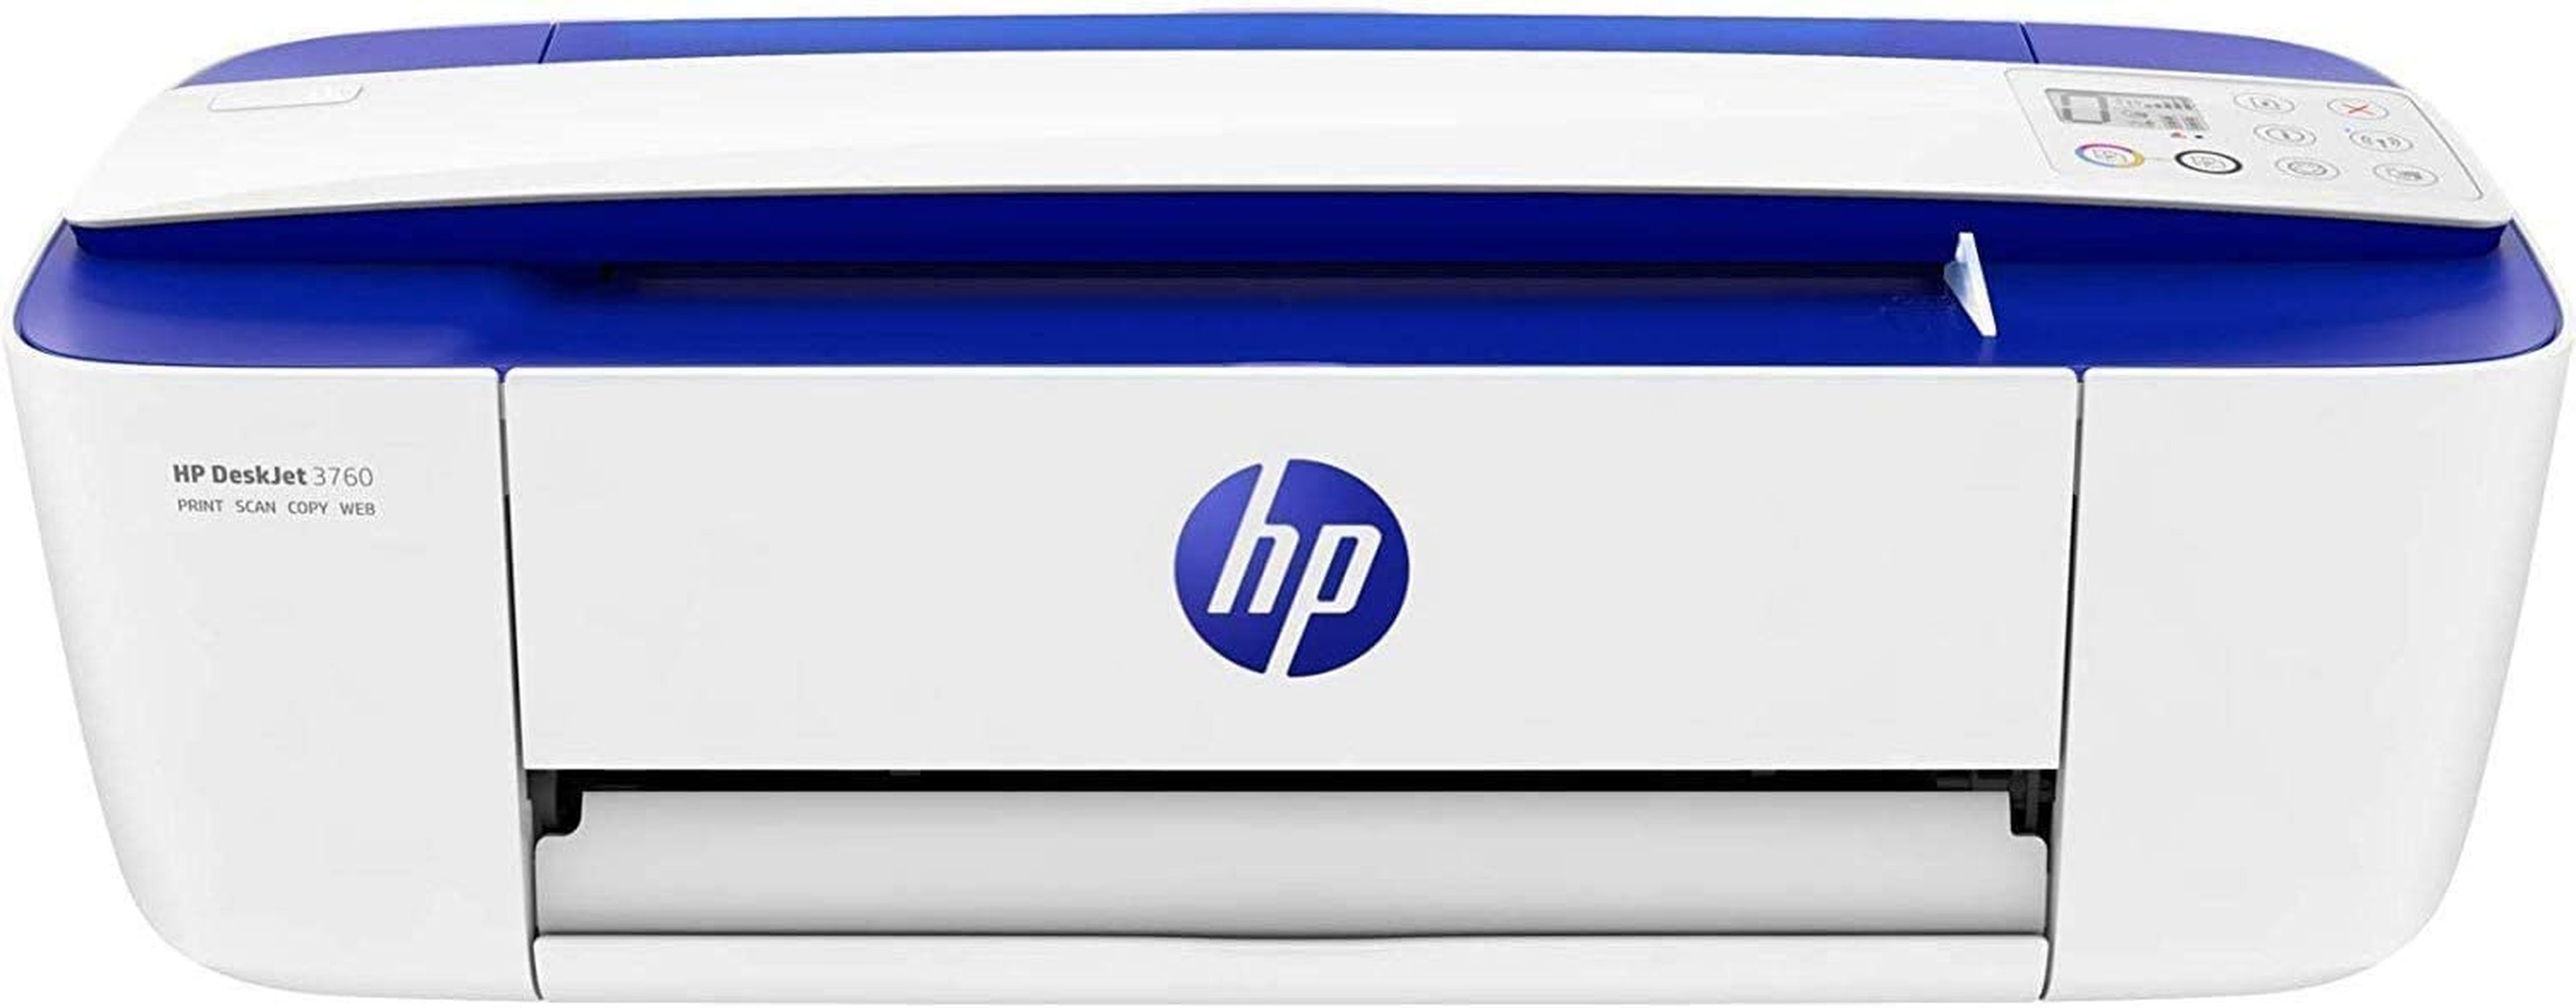 Impresora HP Deskjet 3760